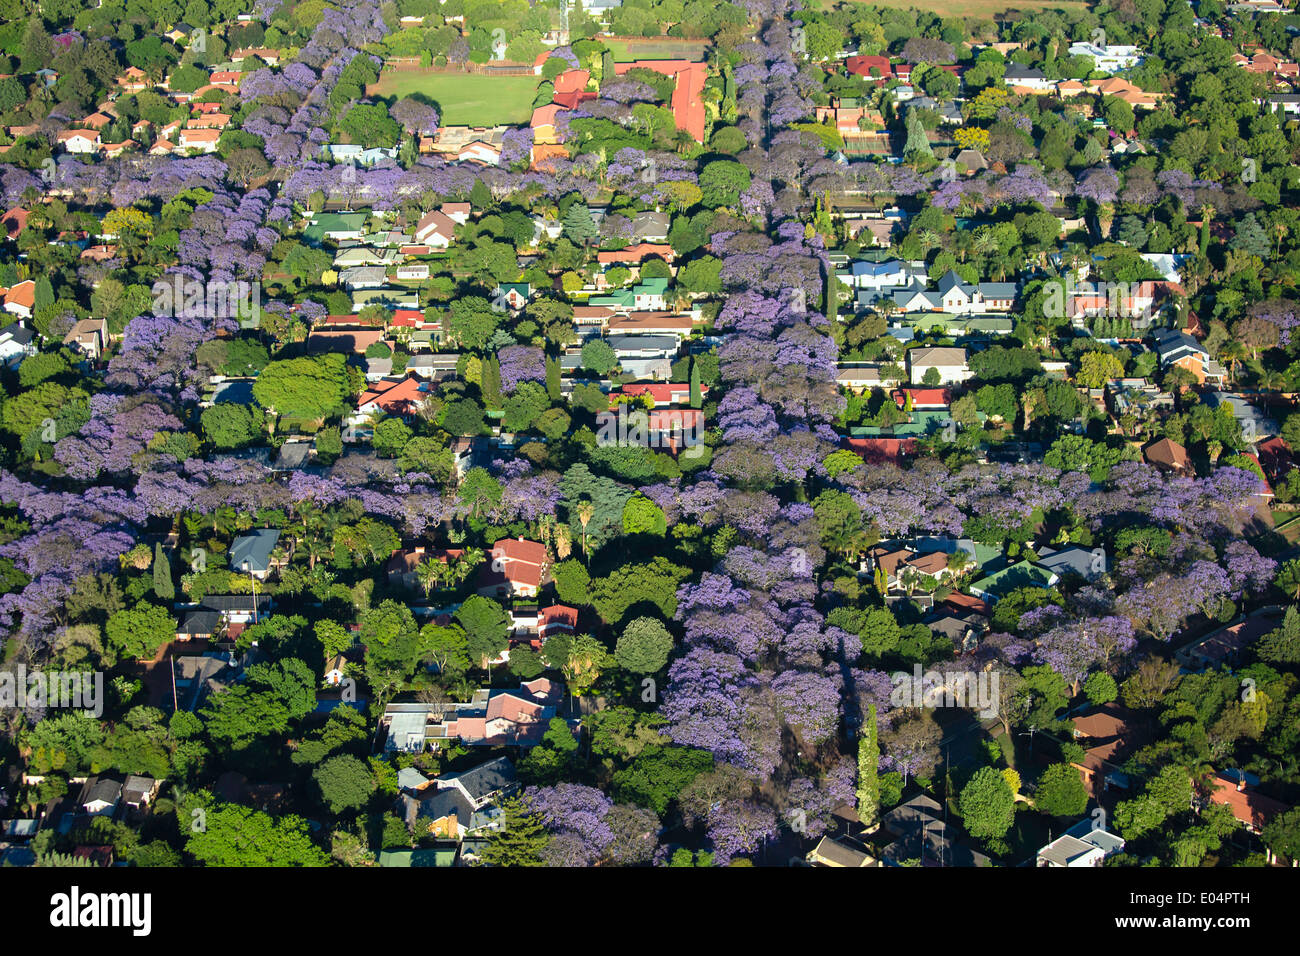 Luftaufnahme von Jacaranda-Bäume in Blüte, Johannesburg Vororte, so dass es eine der grünsten Städte der Welt. Südafrika Stockfoto